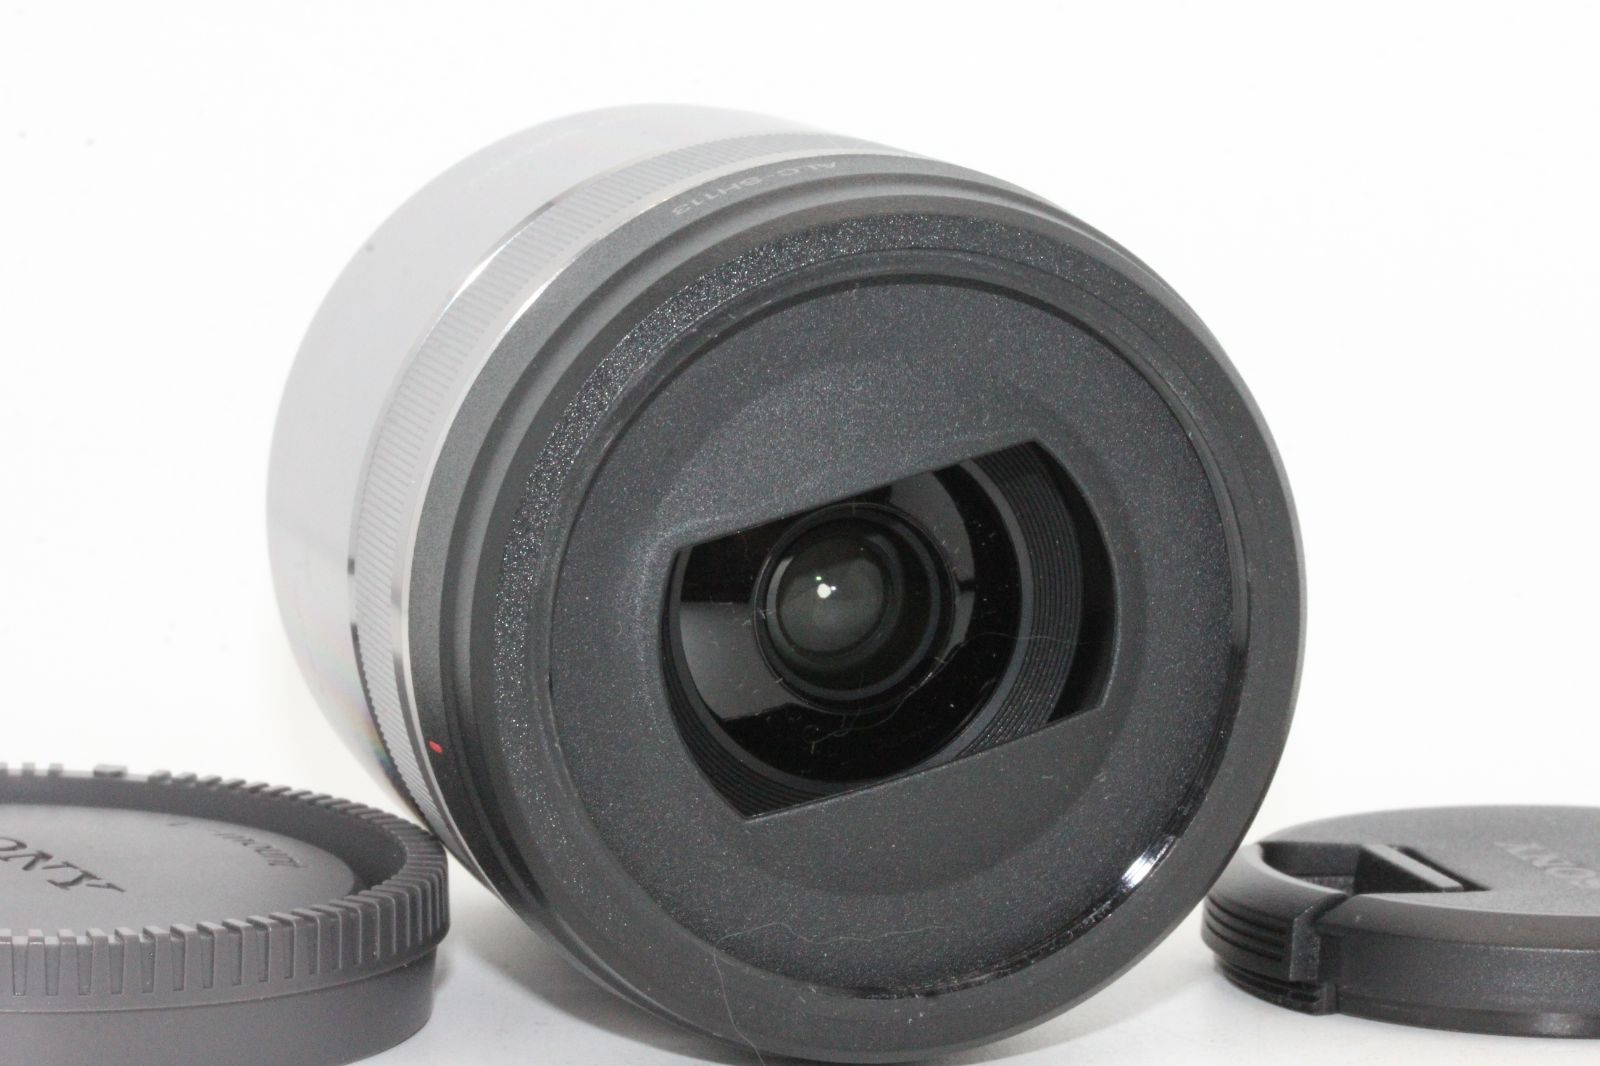 ソニー   マクロ   APS-C   E 30mm F3.5 Macro   デジタル一眼カメラα[Eマウント]用 純正レンズ   SEL30M35 - 2